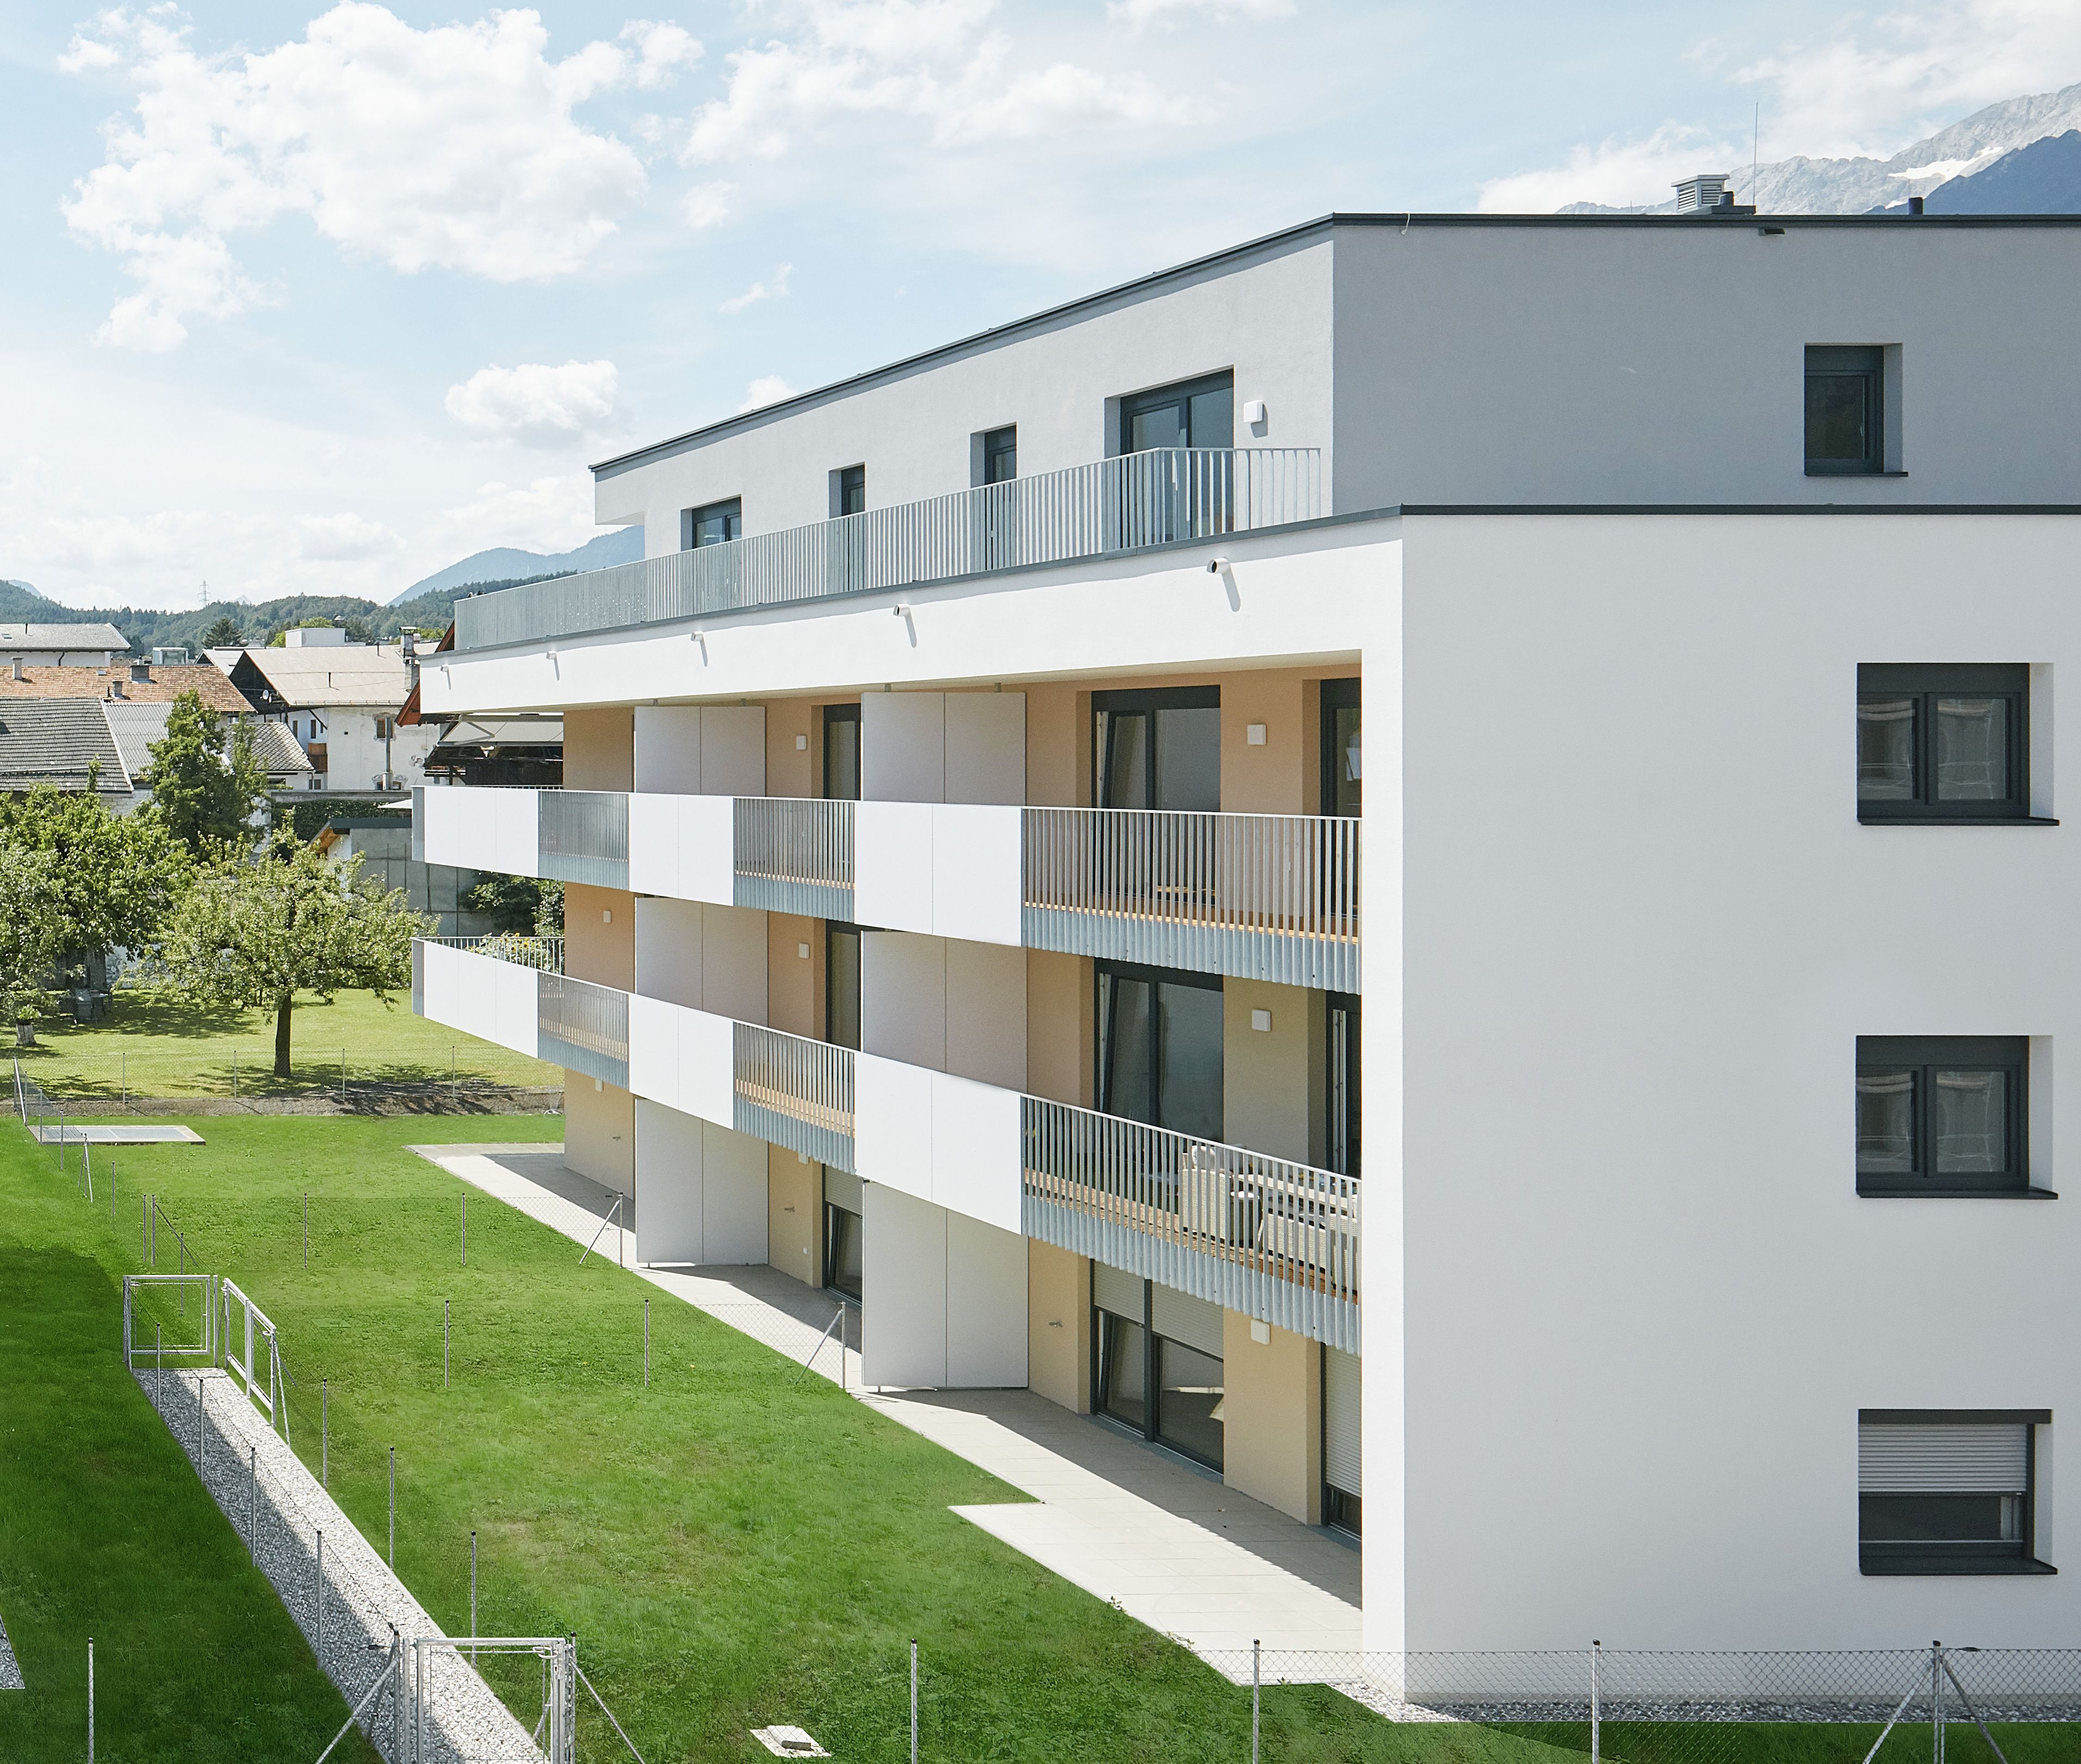 Anton-Auer-Straße 6, 6410 Telfs - Real estate project development